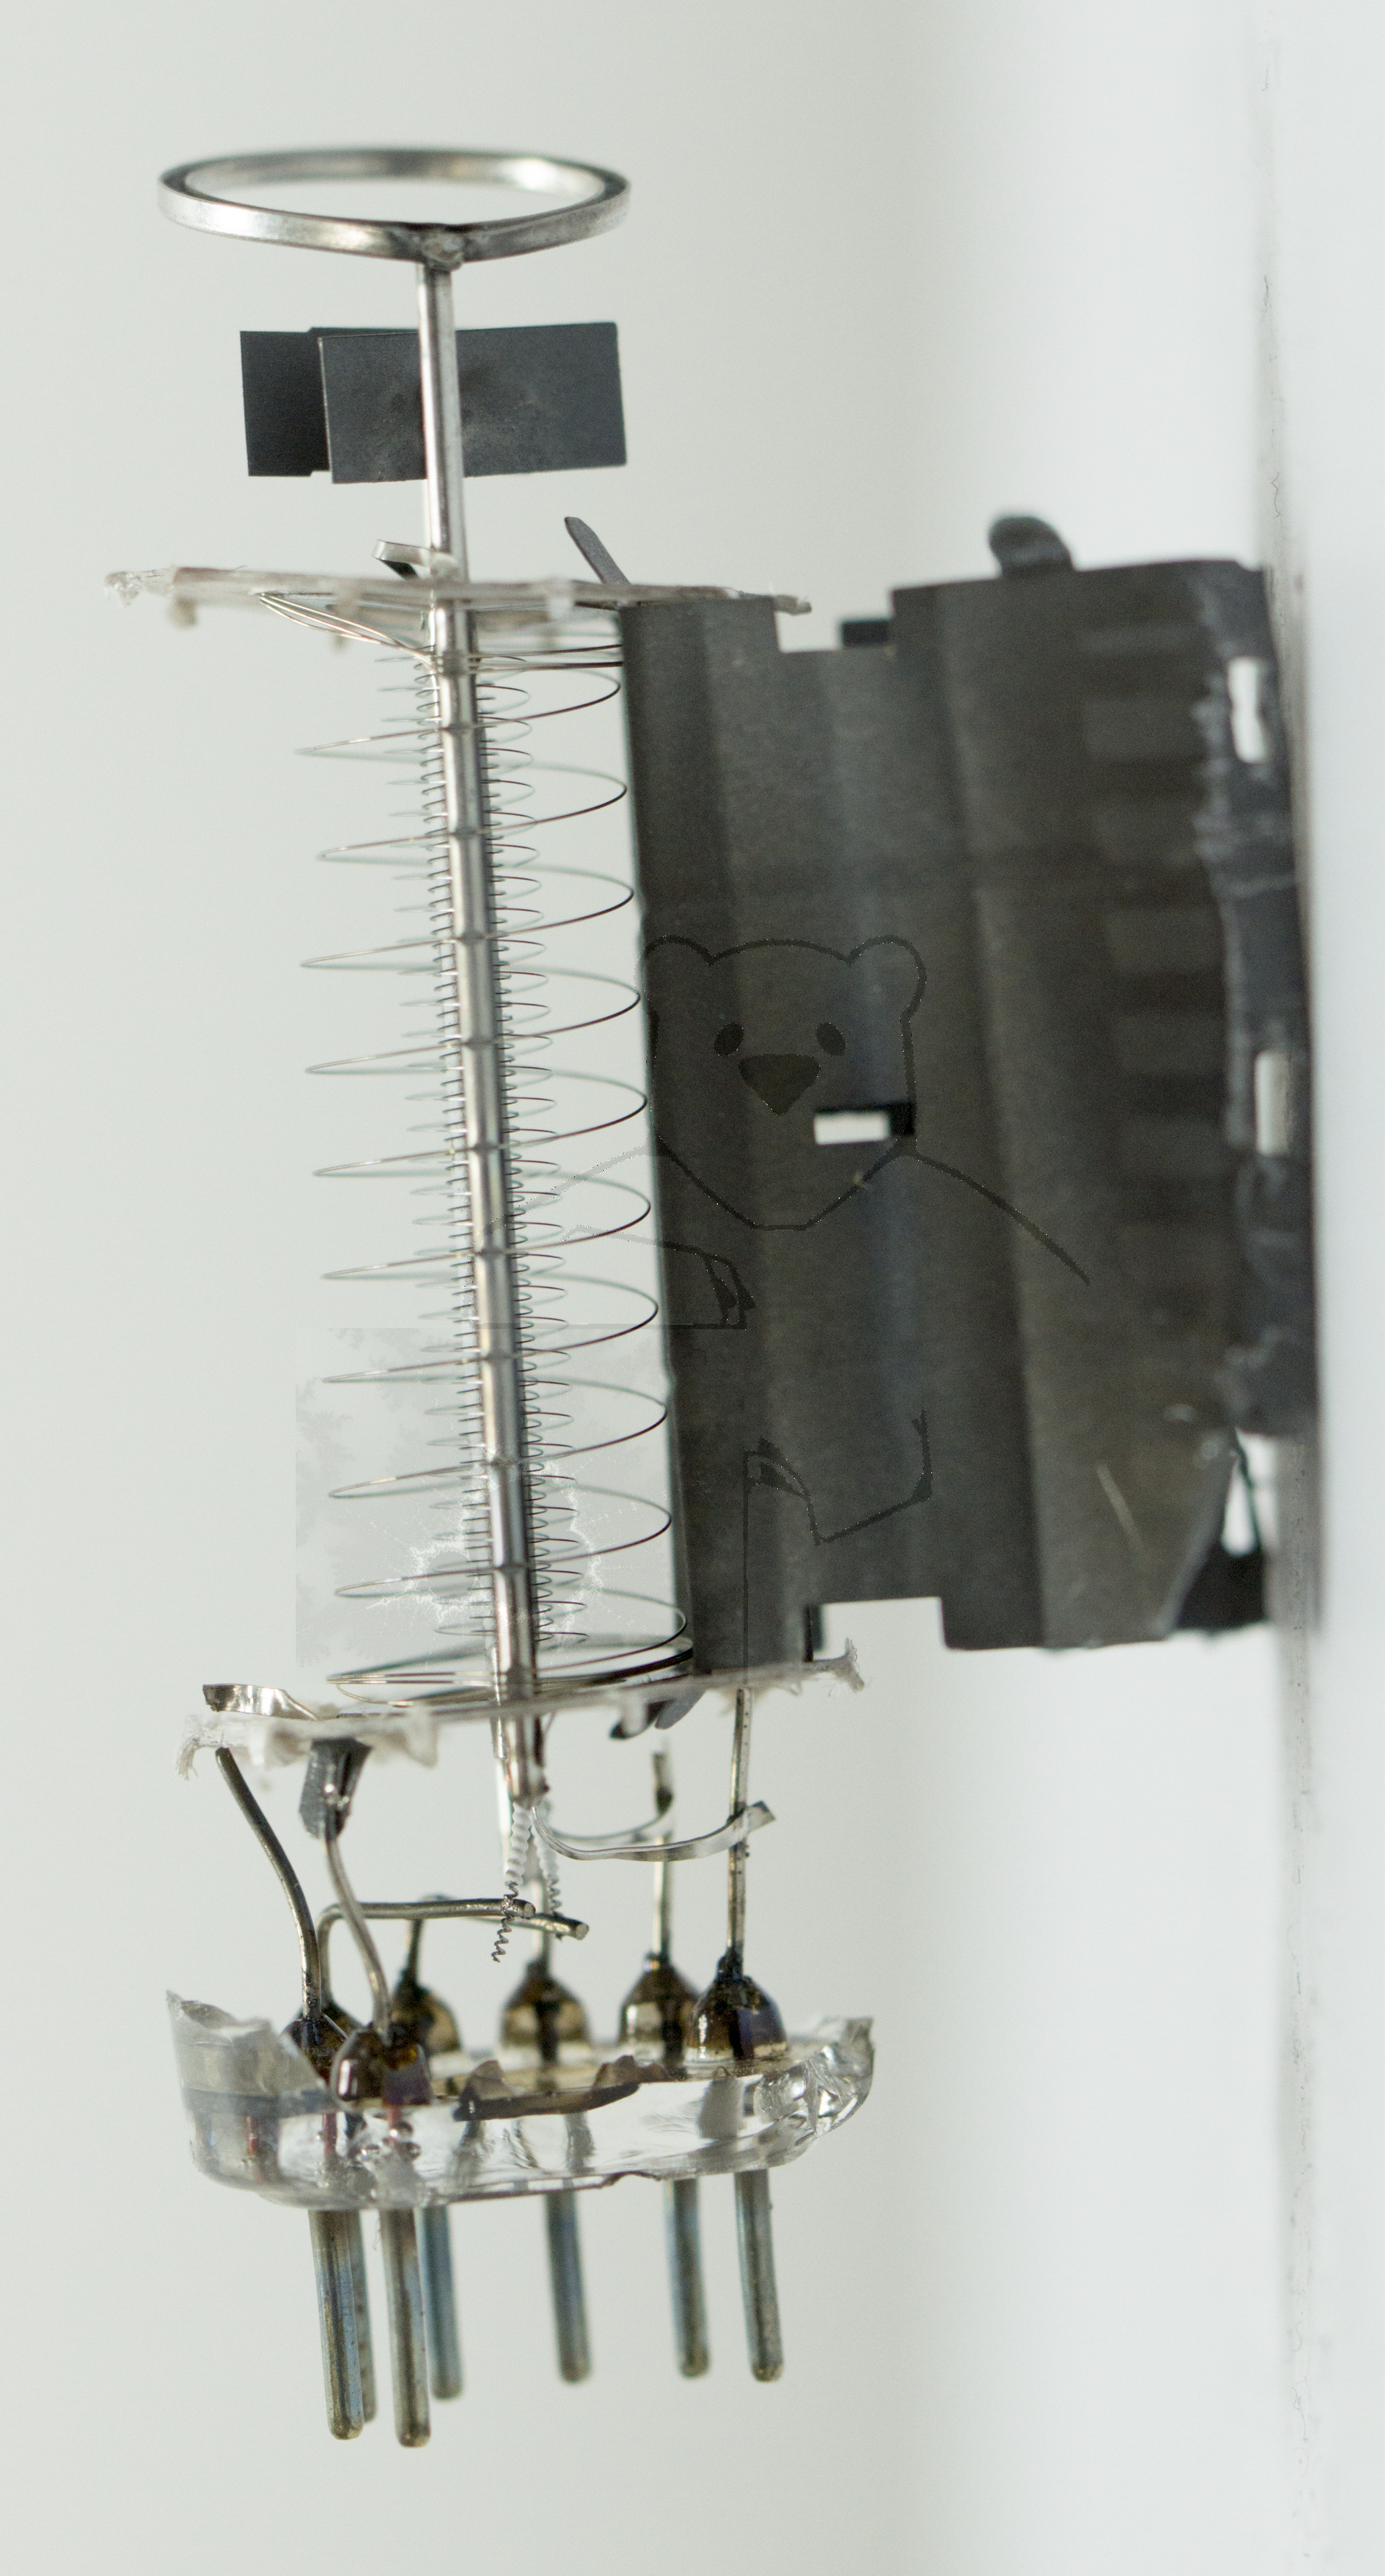 Makroaufnahme EL84 Bild 5 - Geöffnetes Anodenblech (Wurde mit Vakuumfehler betrieben und ist 'durchgeschlagen')